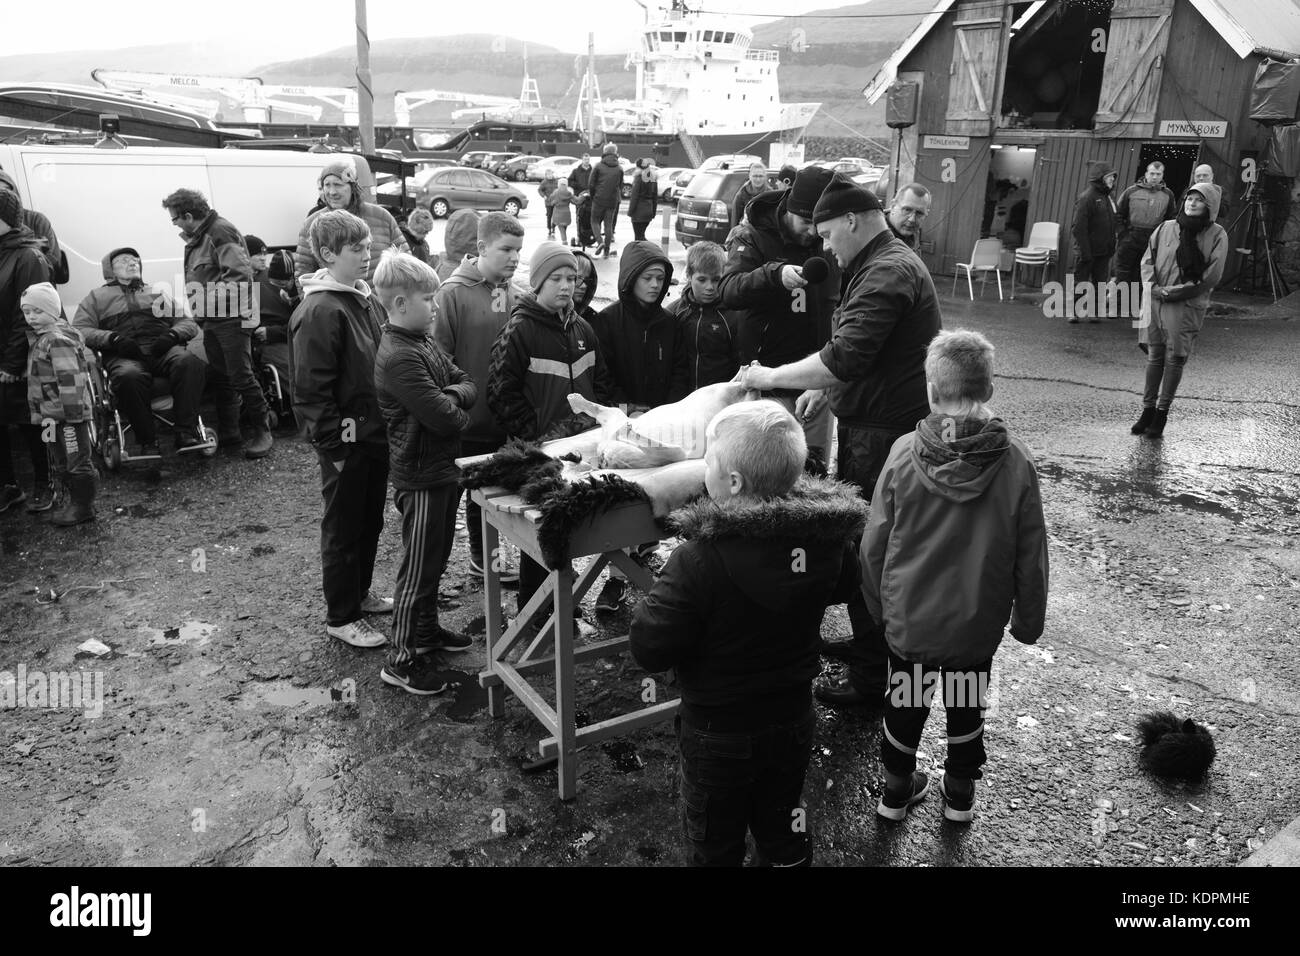 EIDI Village, Isla de Eysturoy, Islas Feroe, 14 de octubre de 2017. Los habitantes de las Islas Feroe observan la manifestación tradicional de matanza de ovejas en el festival local de Heystfagnadur. Foto de stock